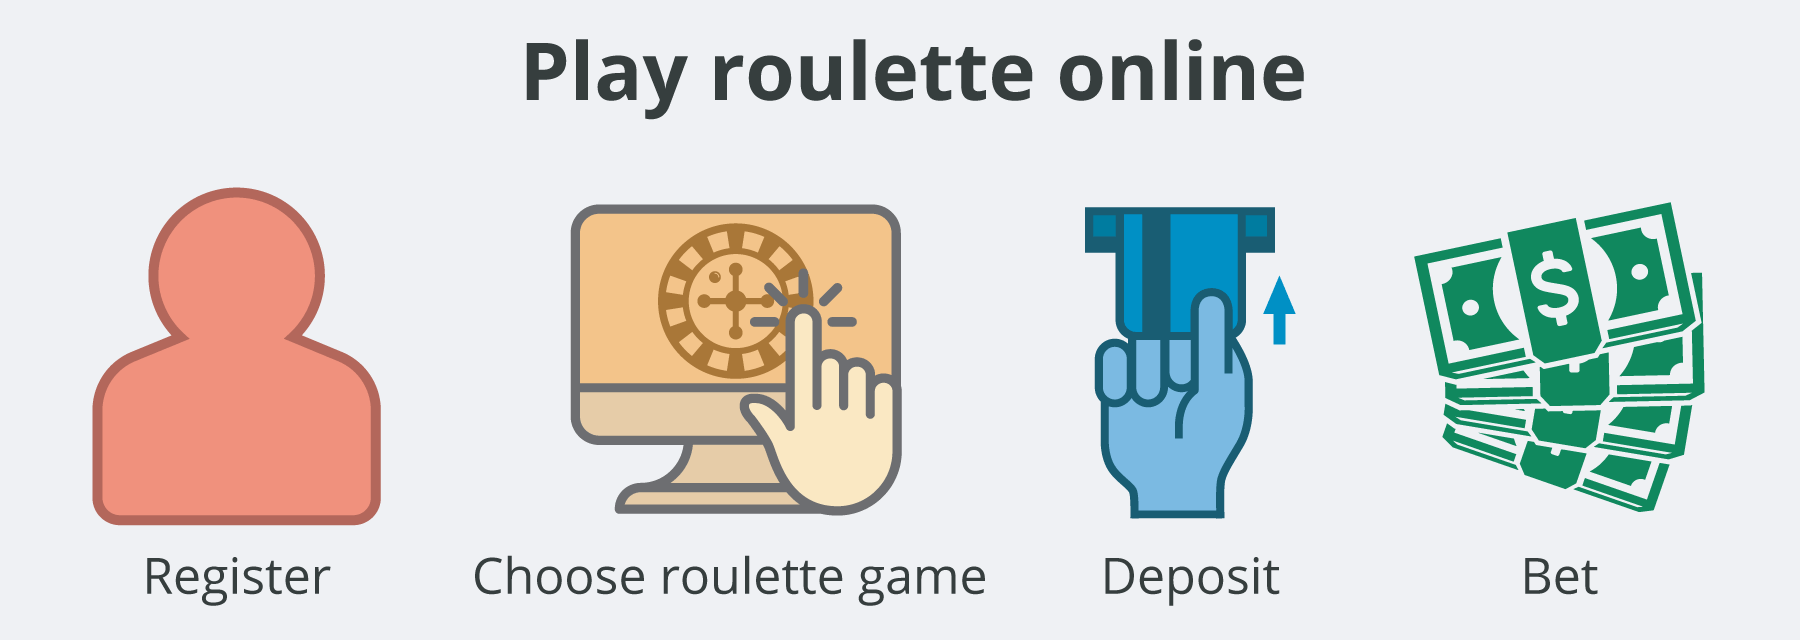 Play Roulette Online UAE  - Emirates Casino Roulette Guide Online Roulette Casinos - UAE Casinos